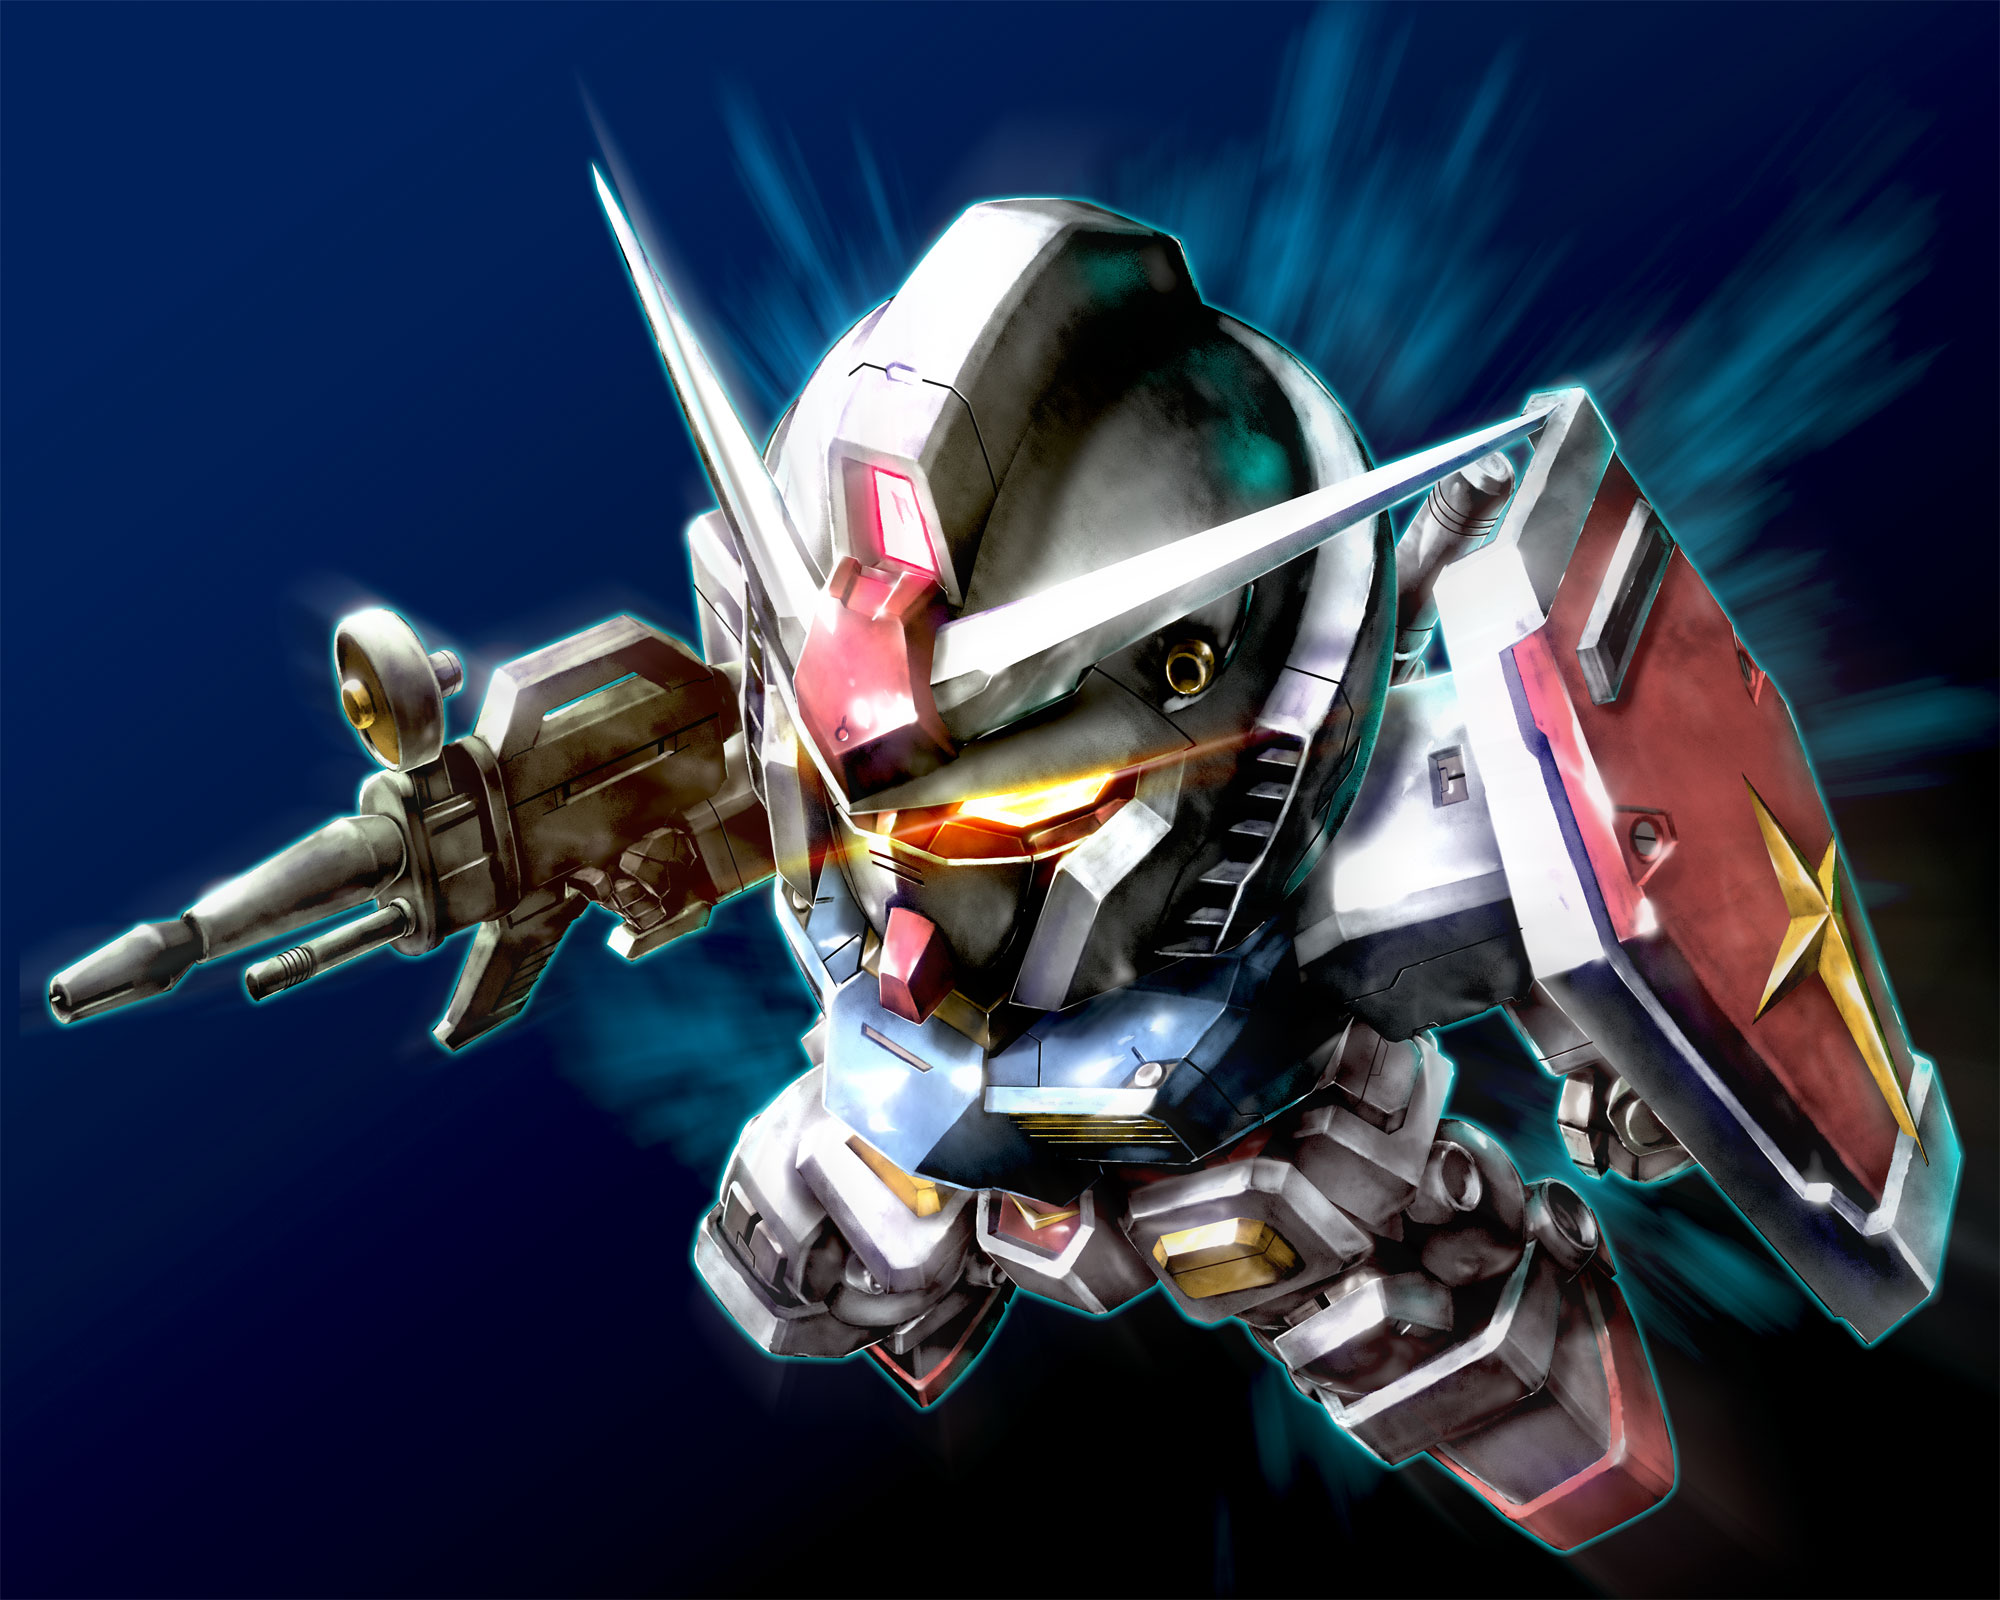 Anime 2000x1600 anime mechs Super Robot Taisen Gundam Mobile Suit Gundam RX-78 Gundam artwork digital art fan art